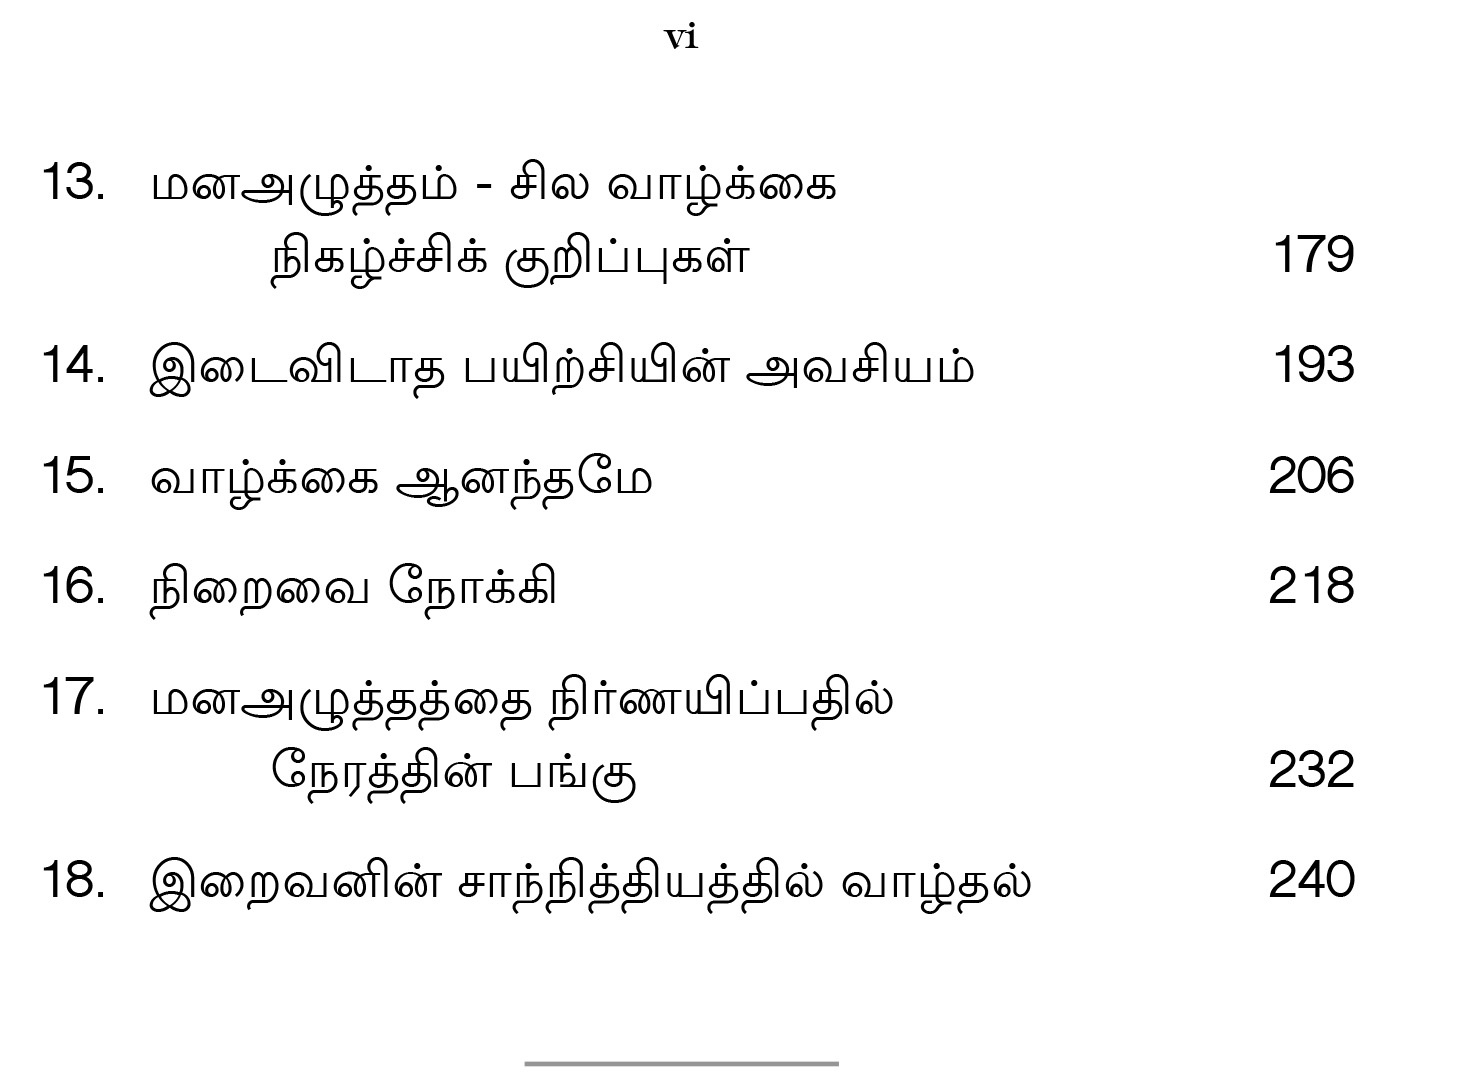 Mana Amaidikku Vazhi (Tamil)